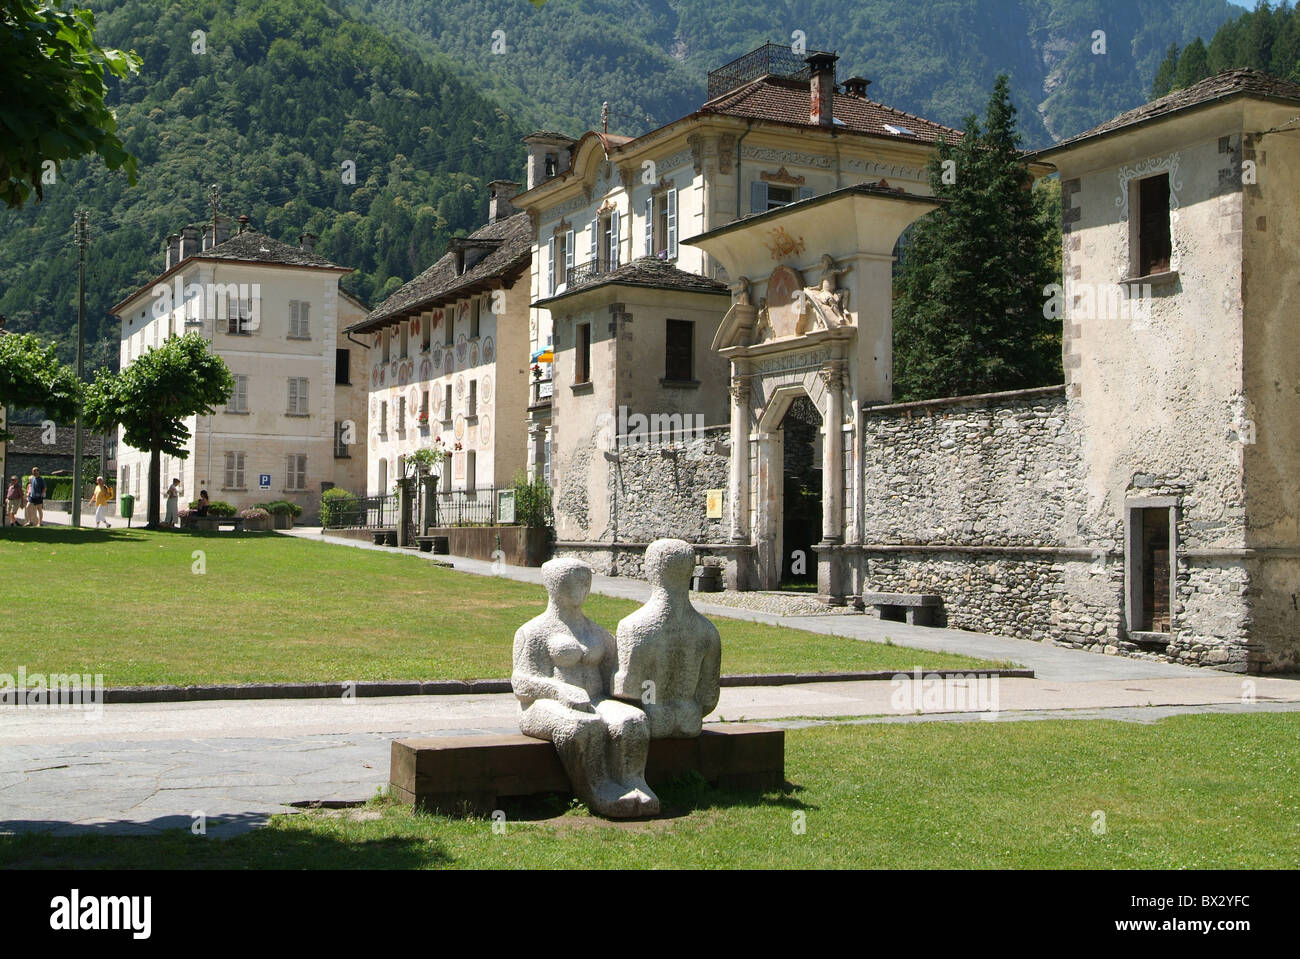 Cevio Dorf Dorf Ort Patrizierhäuser Skulpturen Häuser Häuser Valle Maggia Schweiz Europa Kanton Stockfoto